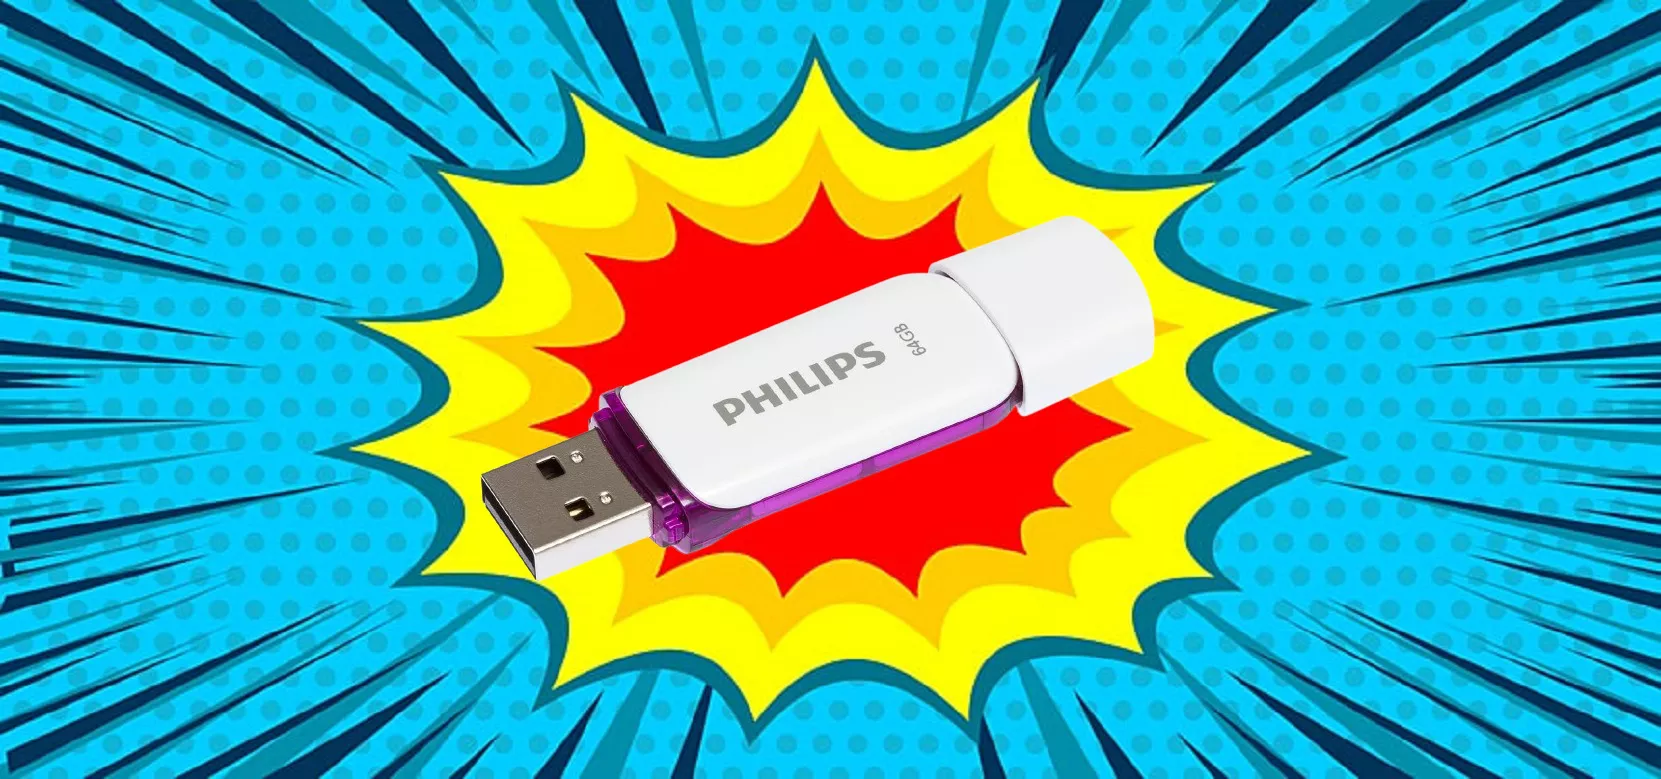 SOLO 8 EURO per la Philips Pen Drive da 64GB (oggi SCONTATISSIMA AL 63%)